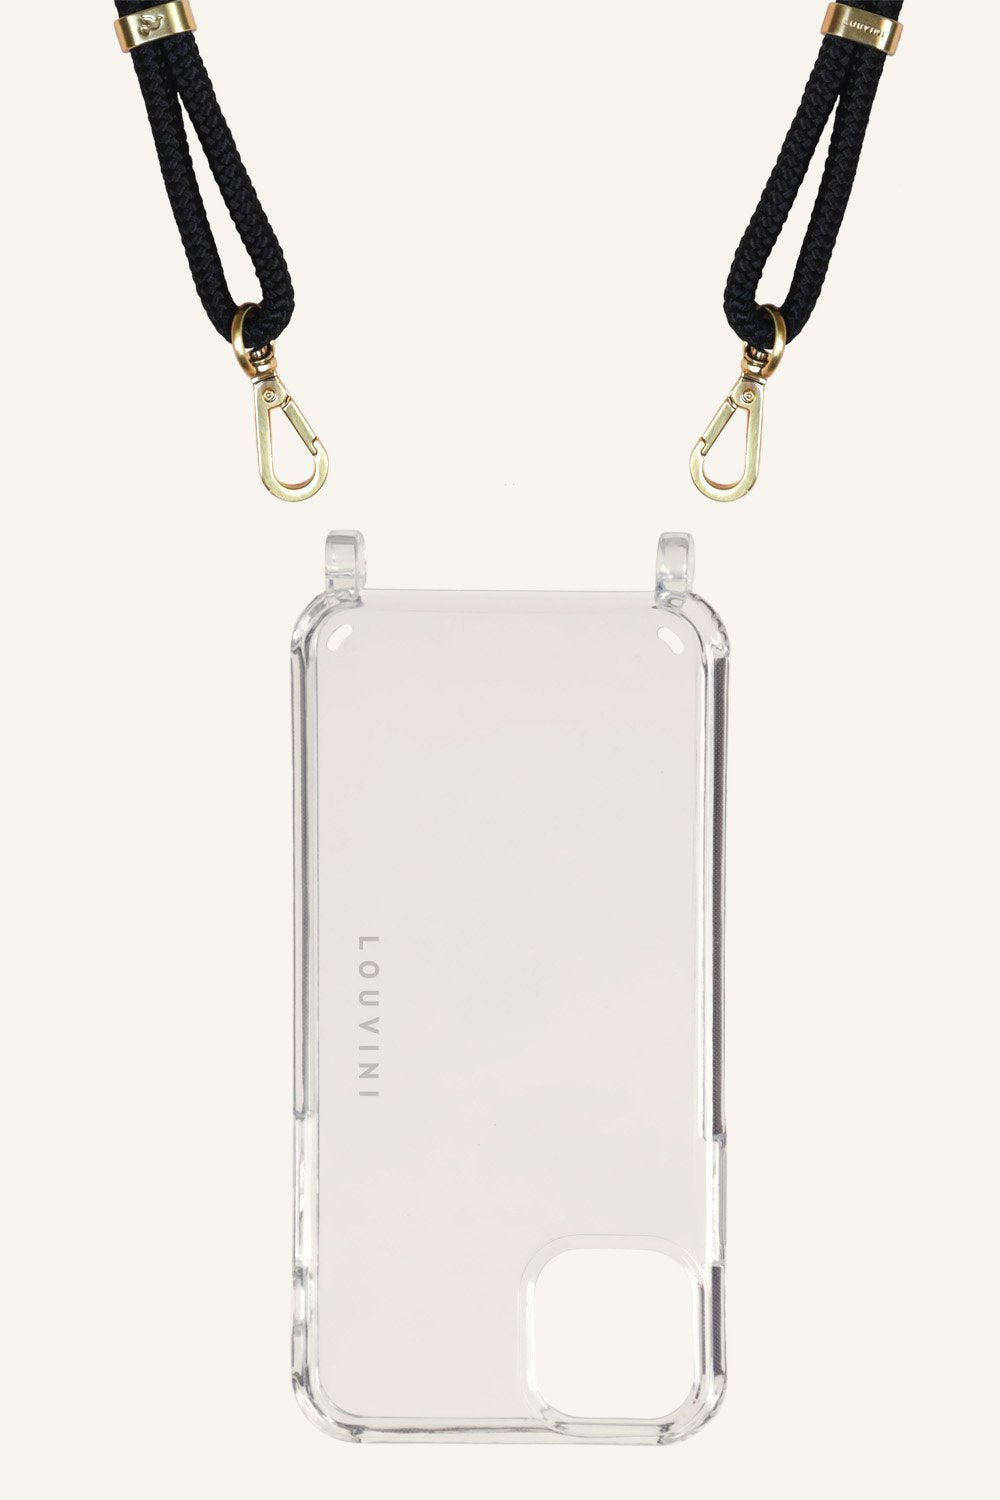 Charlie - Coque transparente avec Cordons pour iPhone 11 Pro Max- Louvini Paris